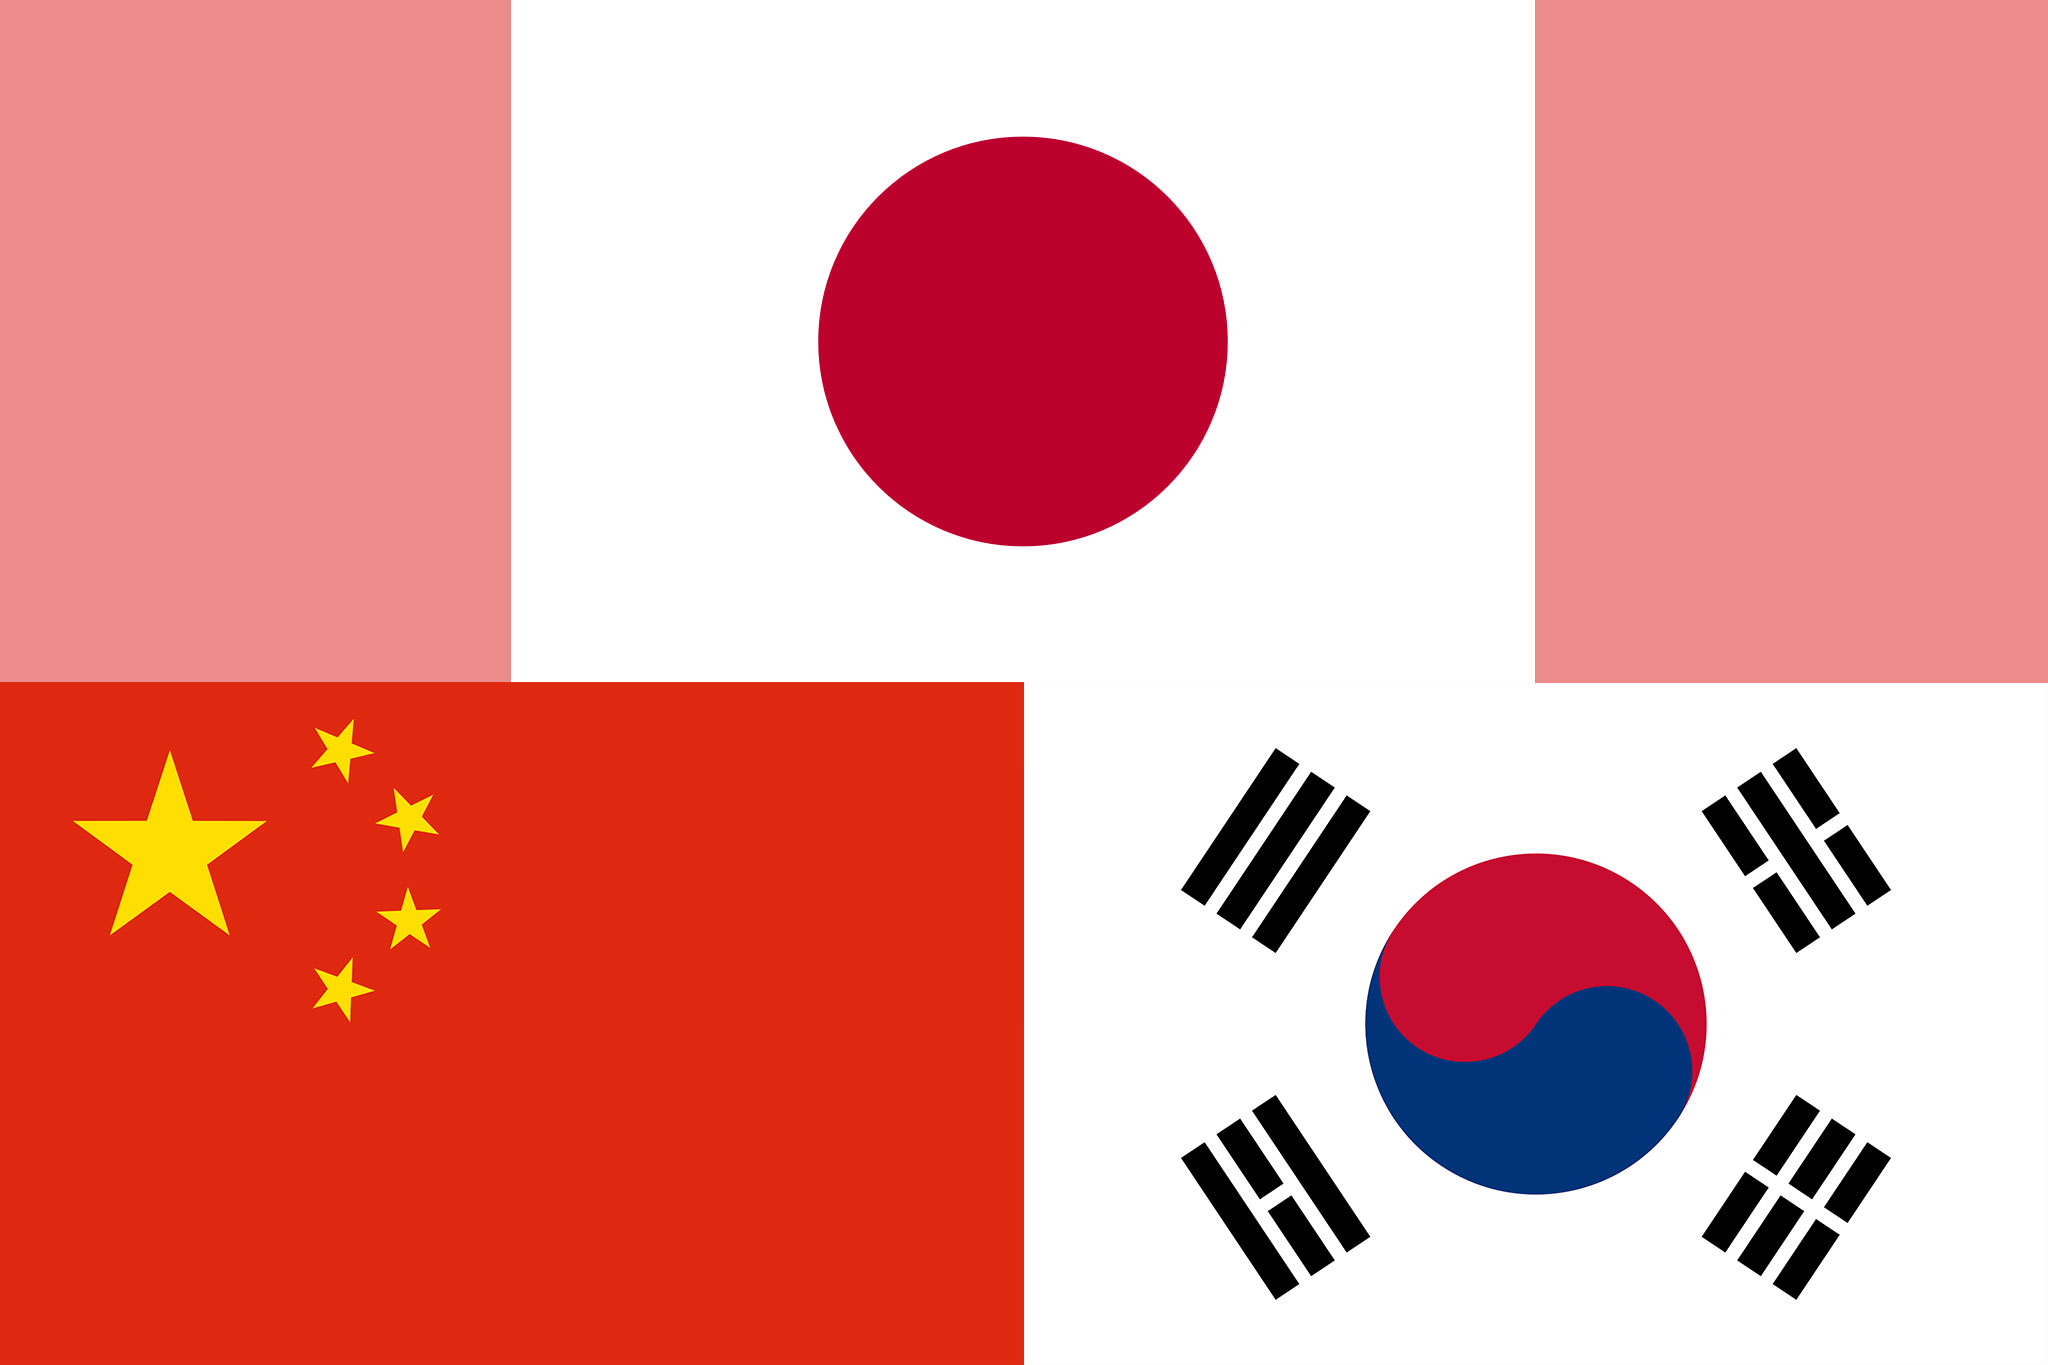 日本と中国と韓国の国旗の画像です。